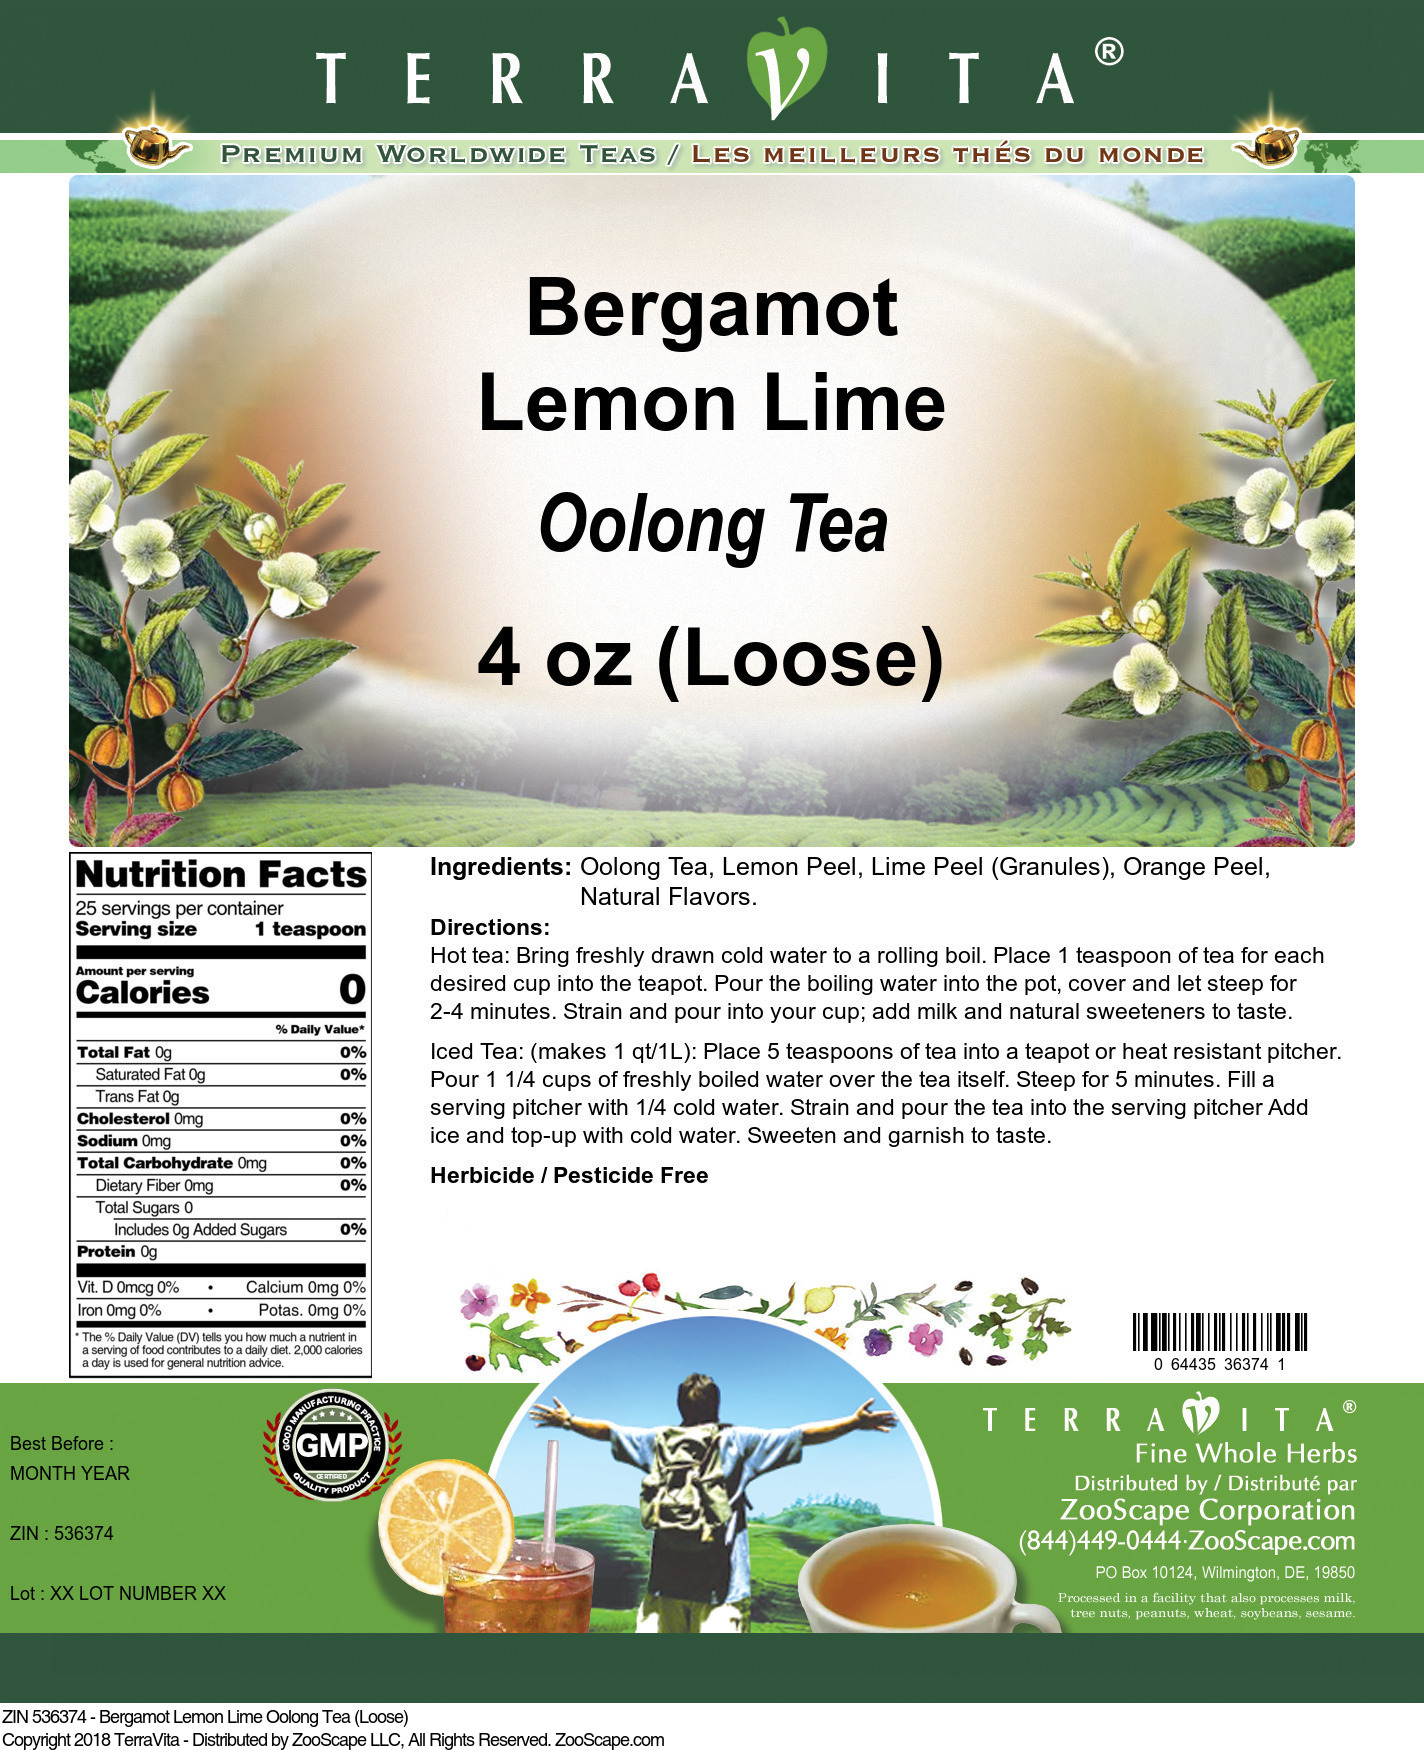 Bergamot Lemon Lime Oolong Tea (Loose) - Label